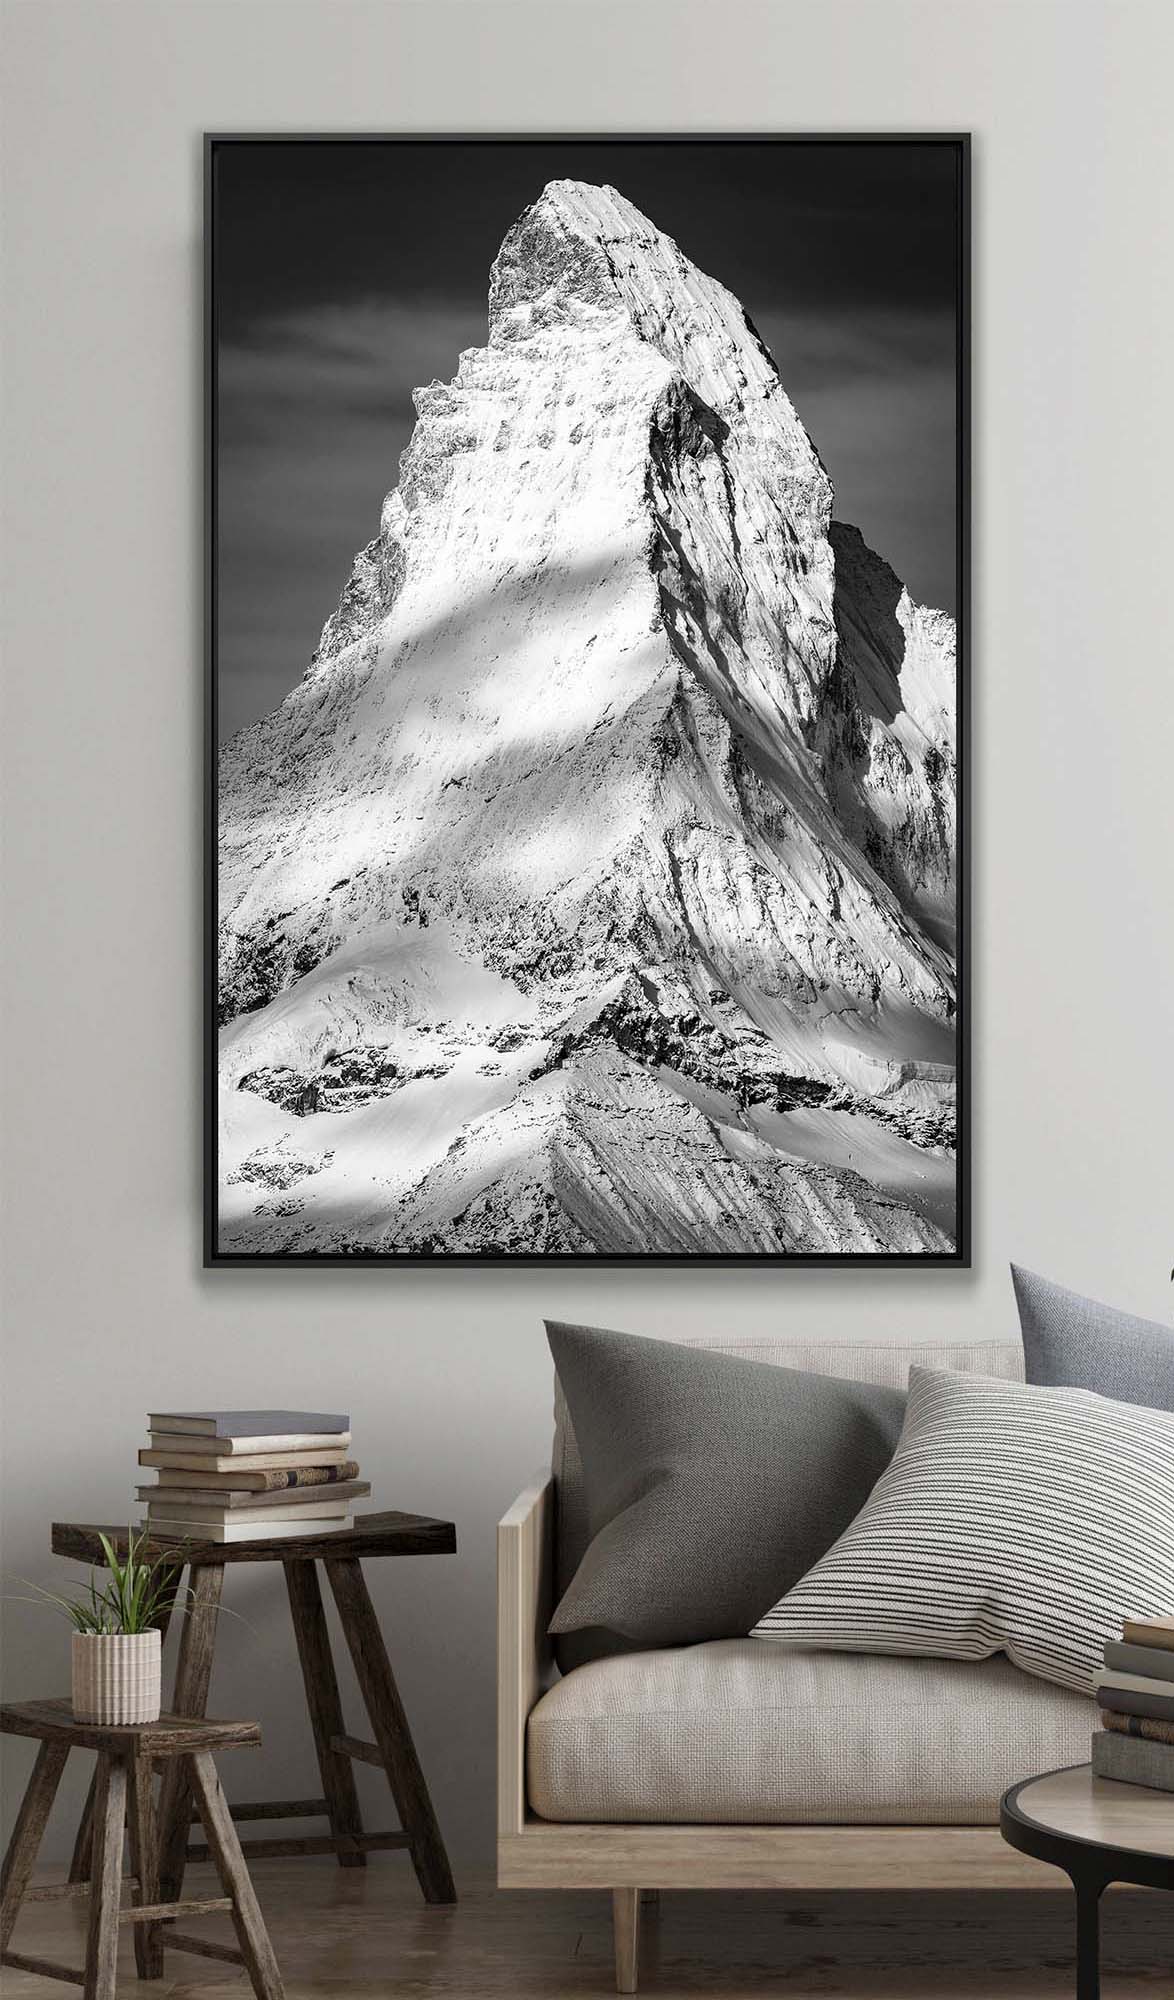 mountain photo - large format mountain photo - frame mountain photo black and white - mountain photo alps - print mountain photo large format